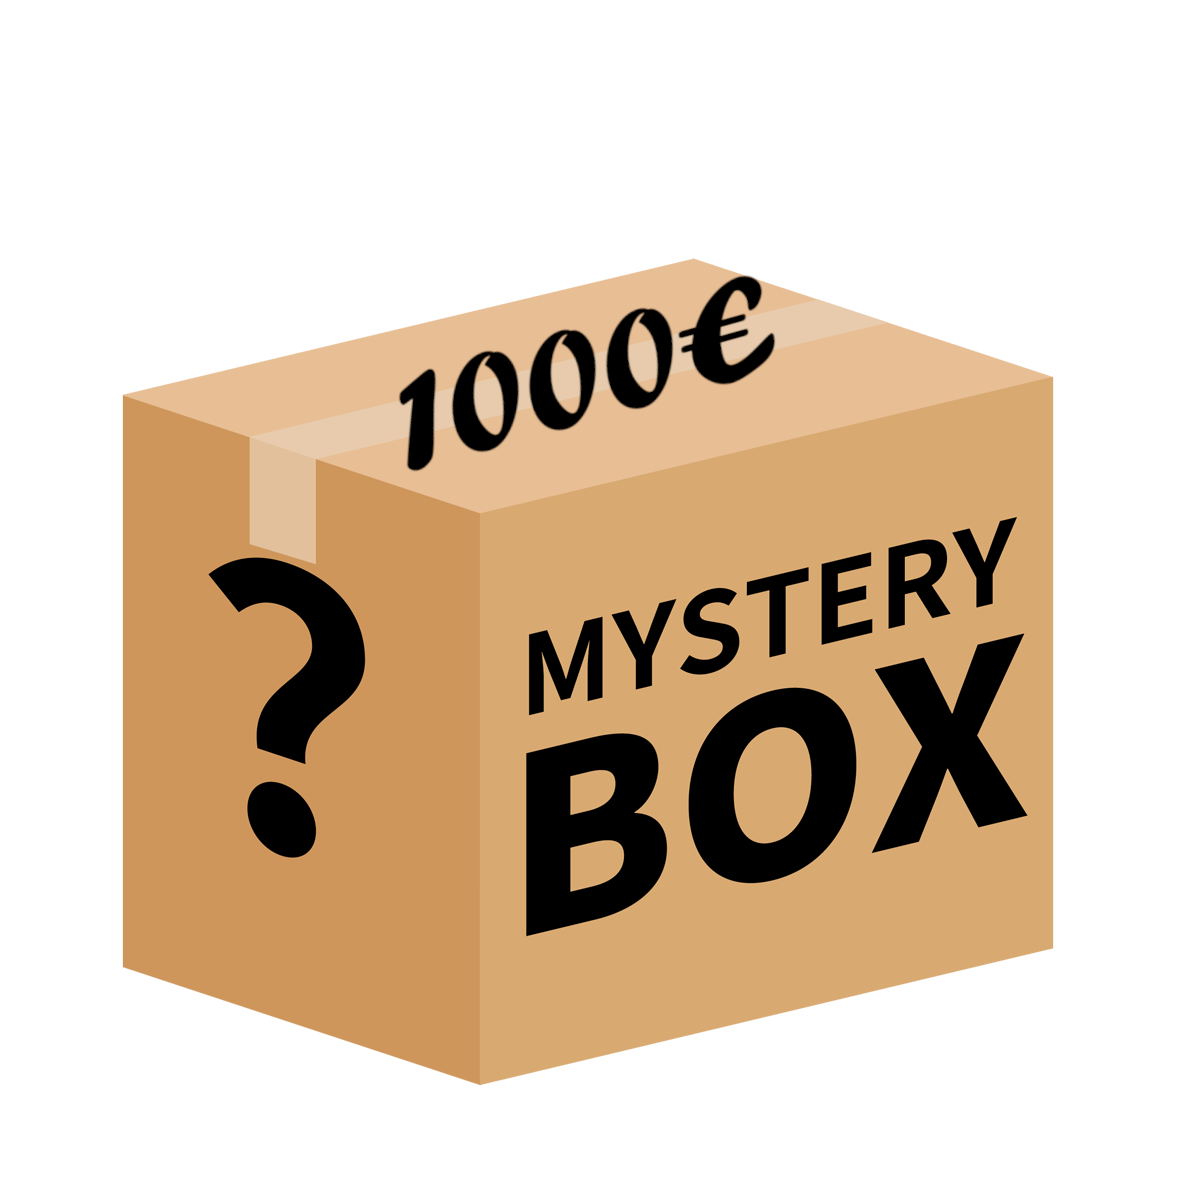 Stone Island & C.P. Company Mistery Box 1000€